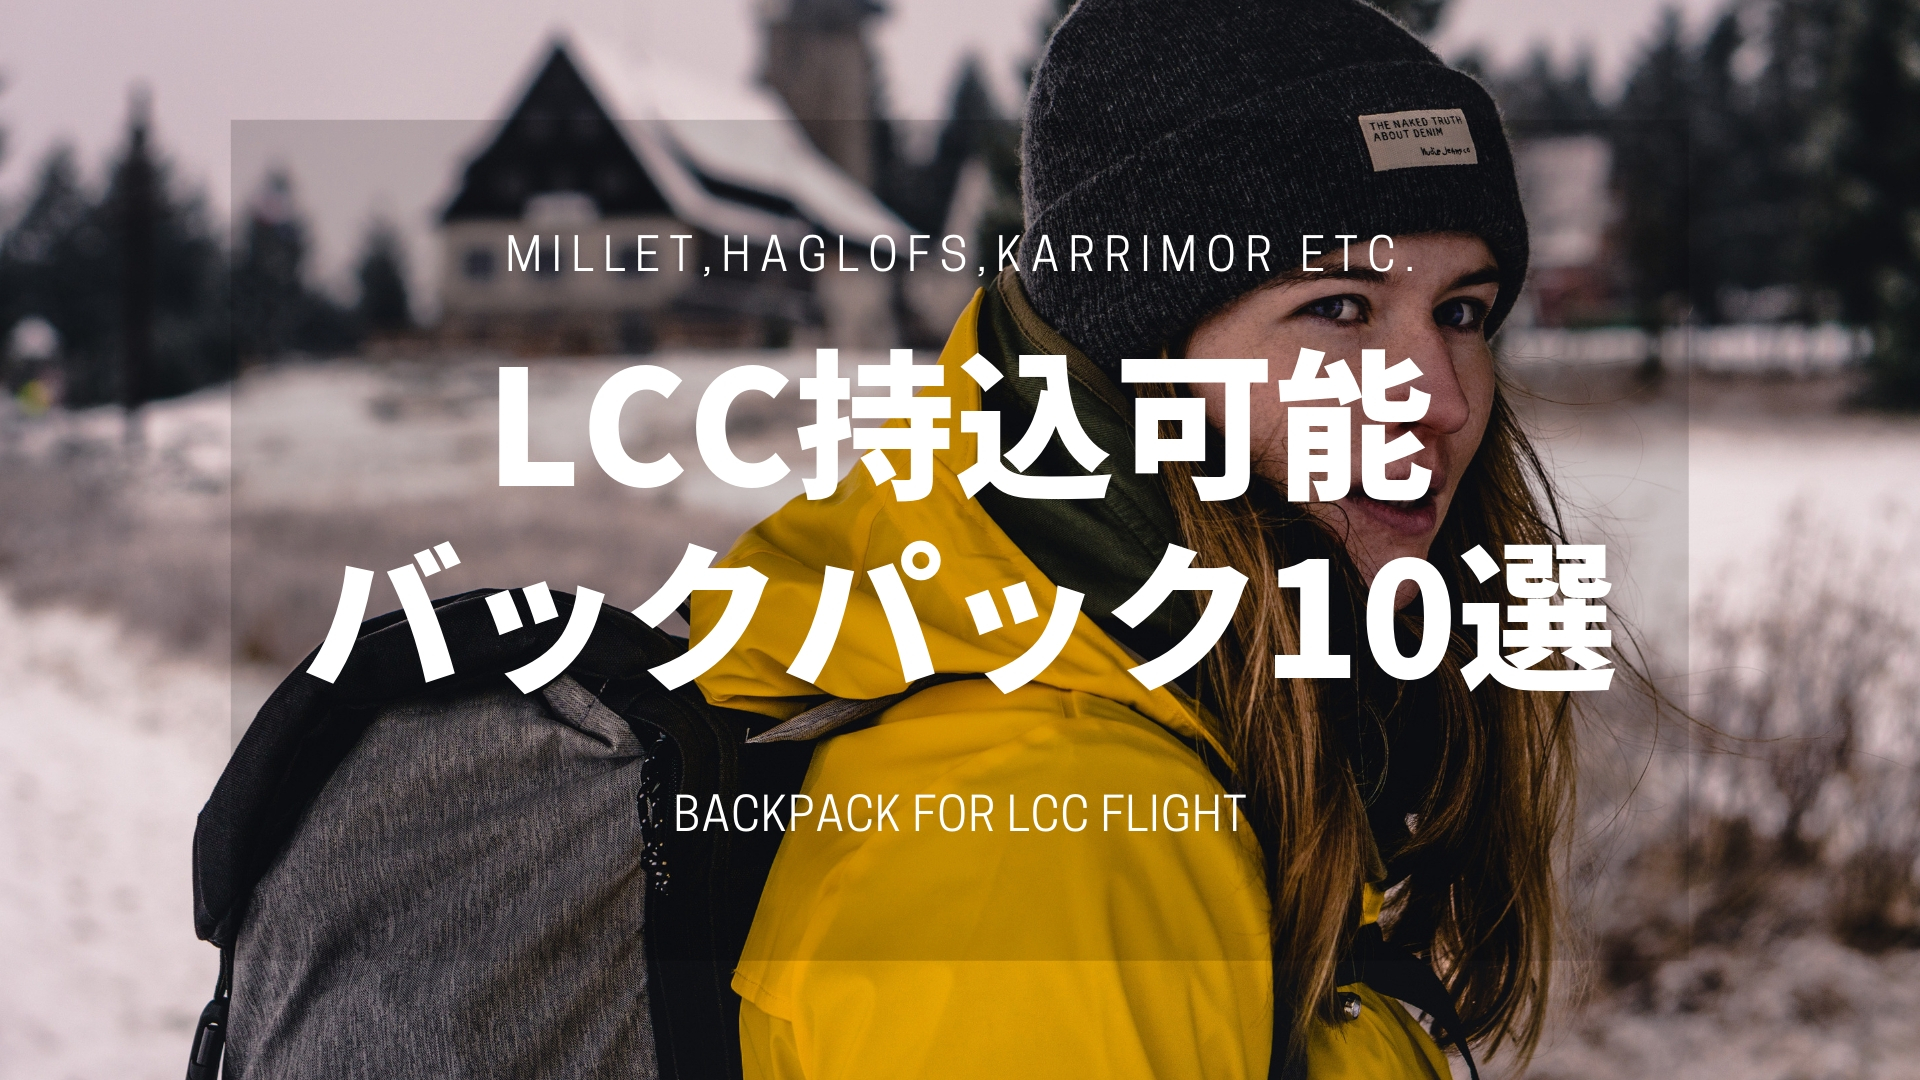 機内持ち込みサイズ 海外旅行におすすめのバックパック10選 Lcc対応